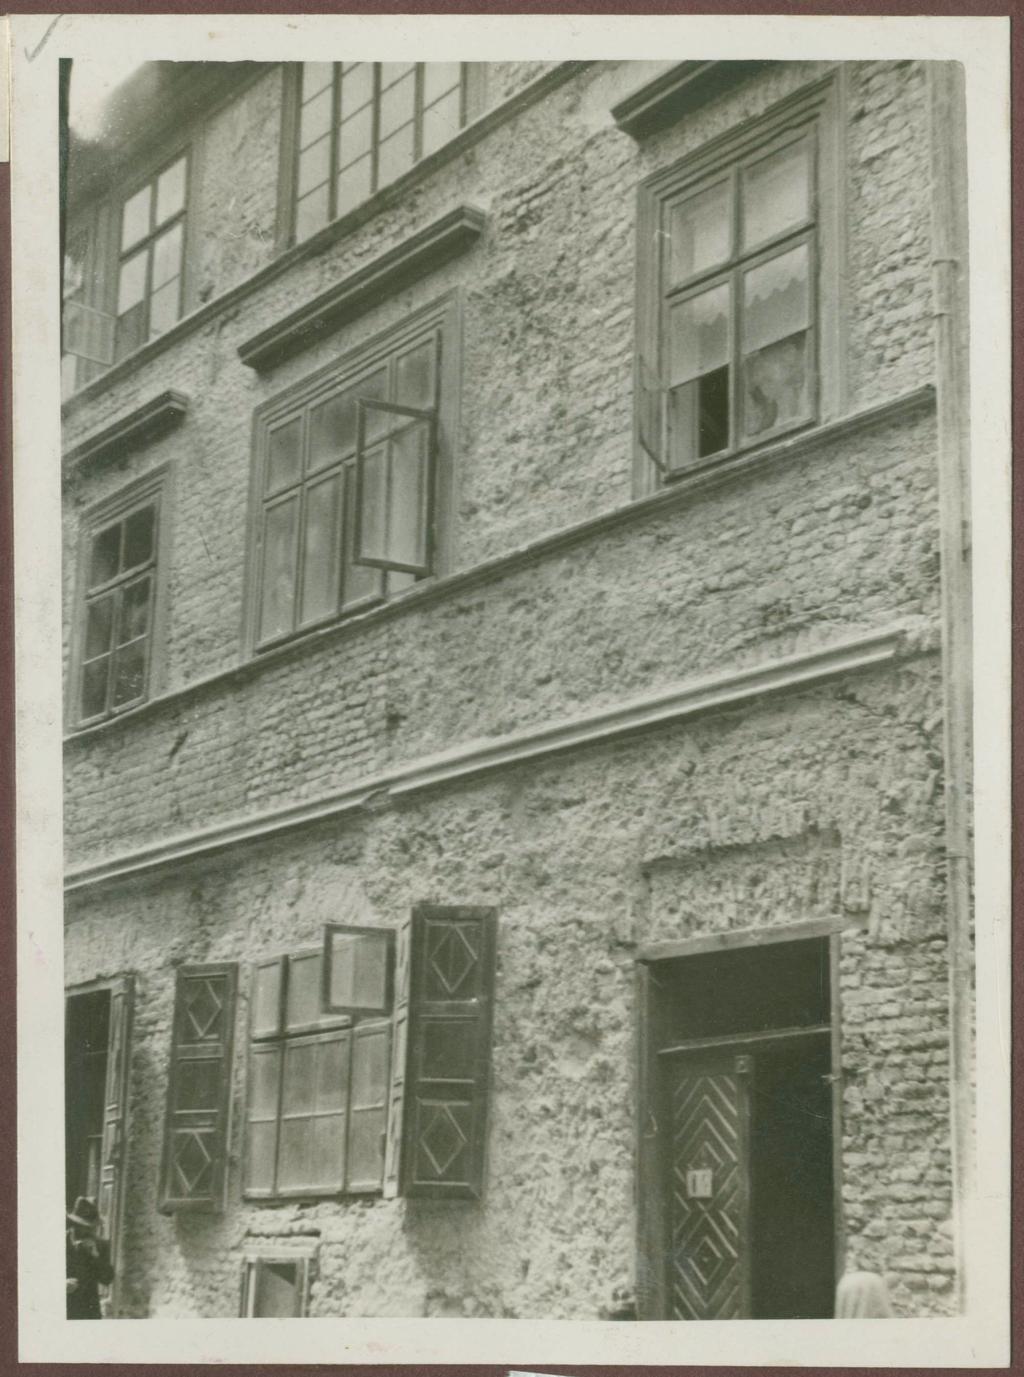 Fotografie przedwojenne/pre-war photographs: Grodzka 14, po odsłonięciu tynków, zdjęcie z albumu Zdjęcia z Robót konserwatorskich